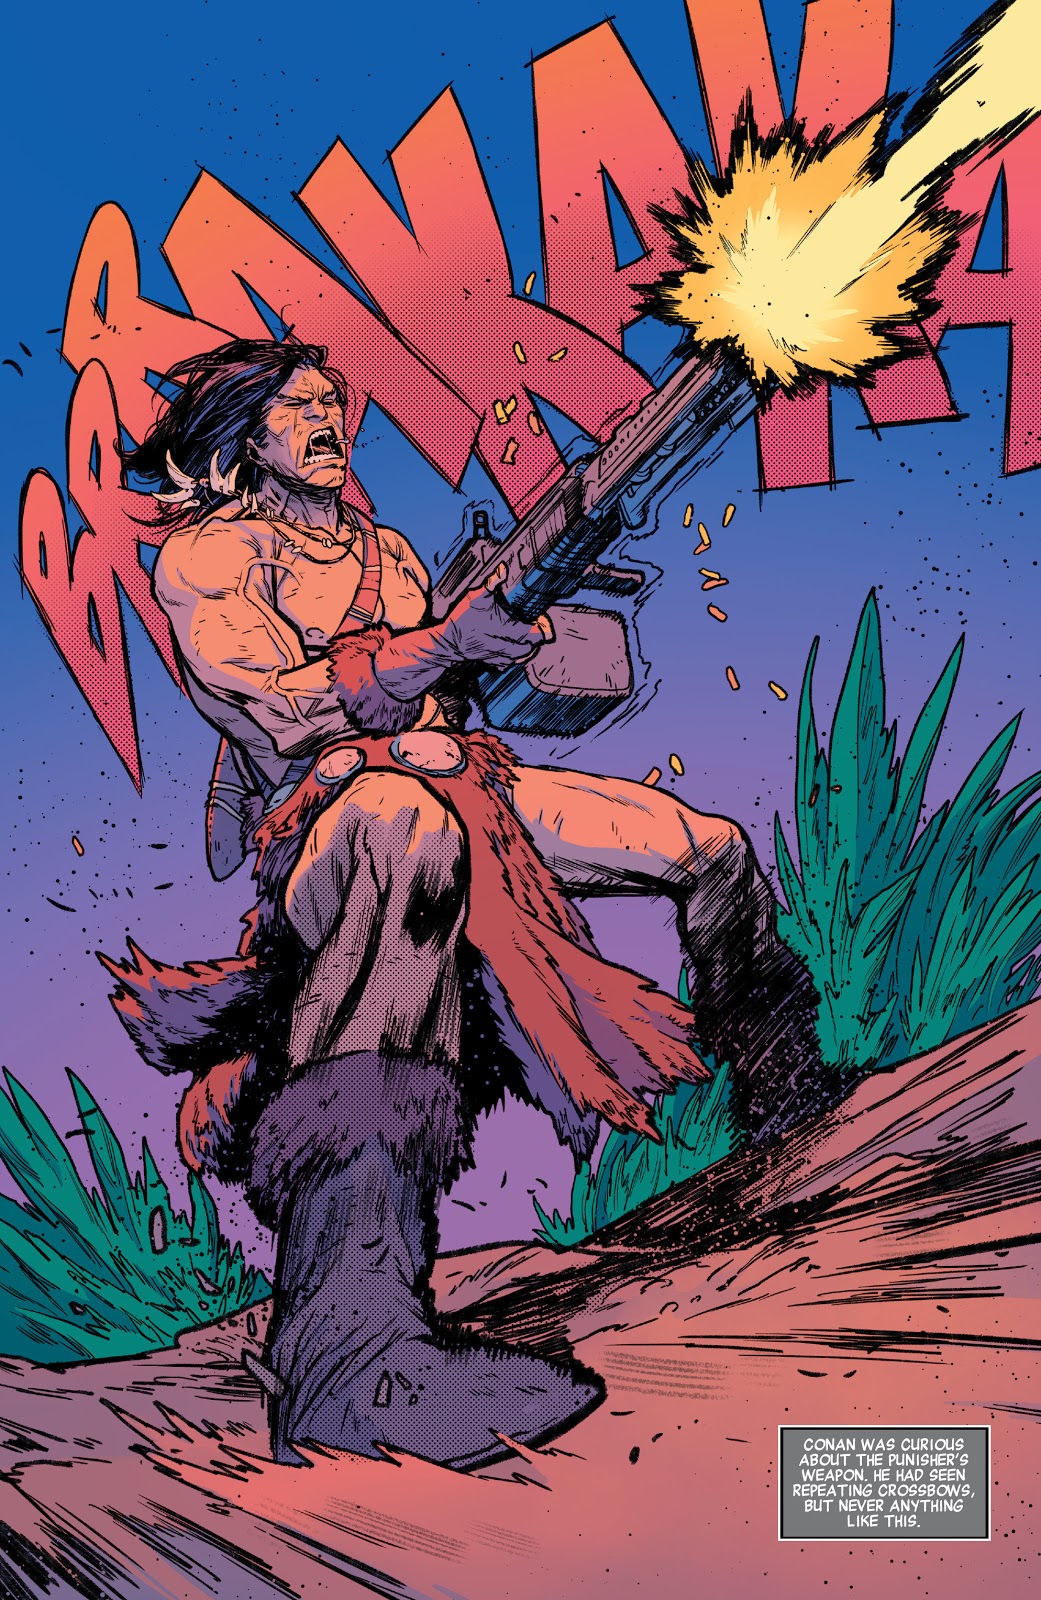 Conan The Barbarian Using A Machine Gun